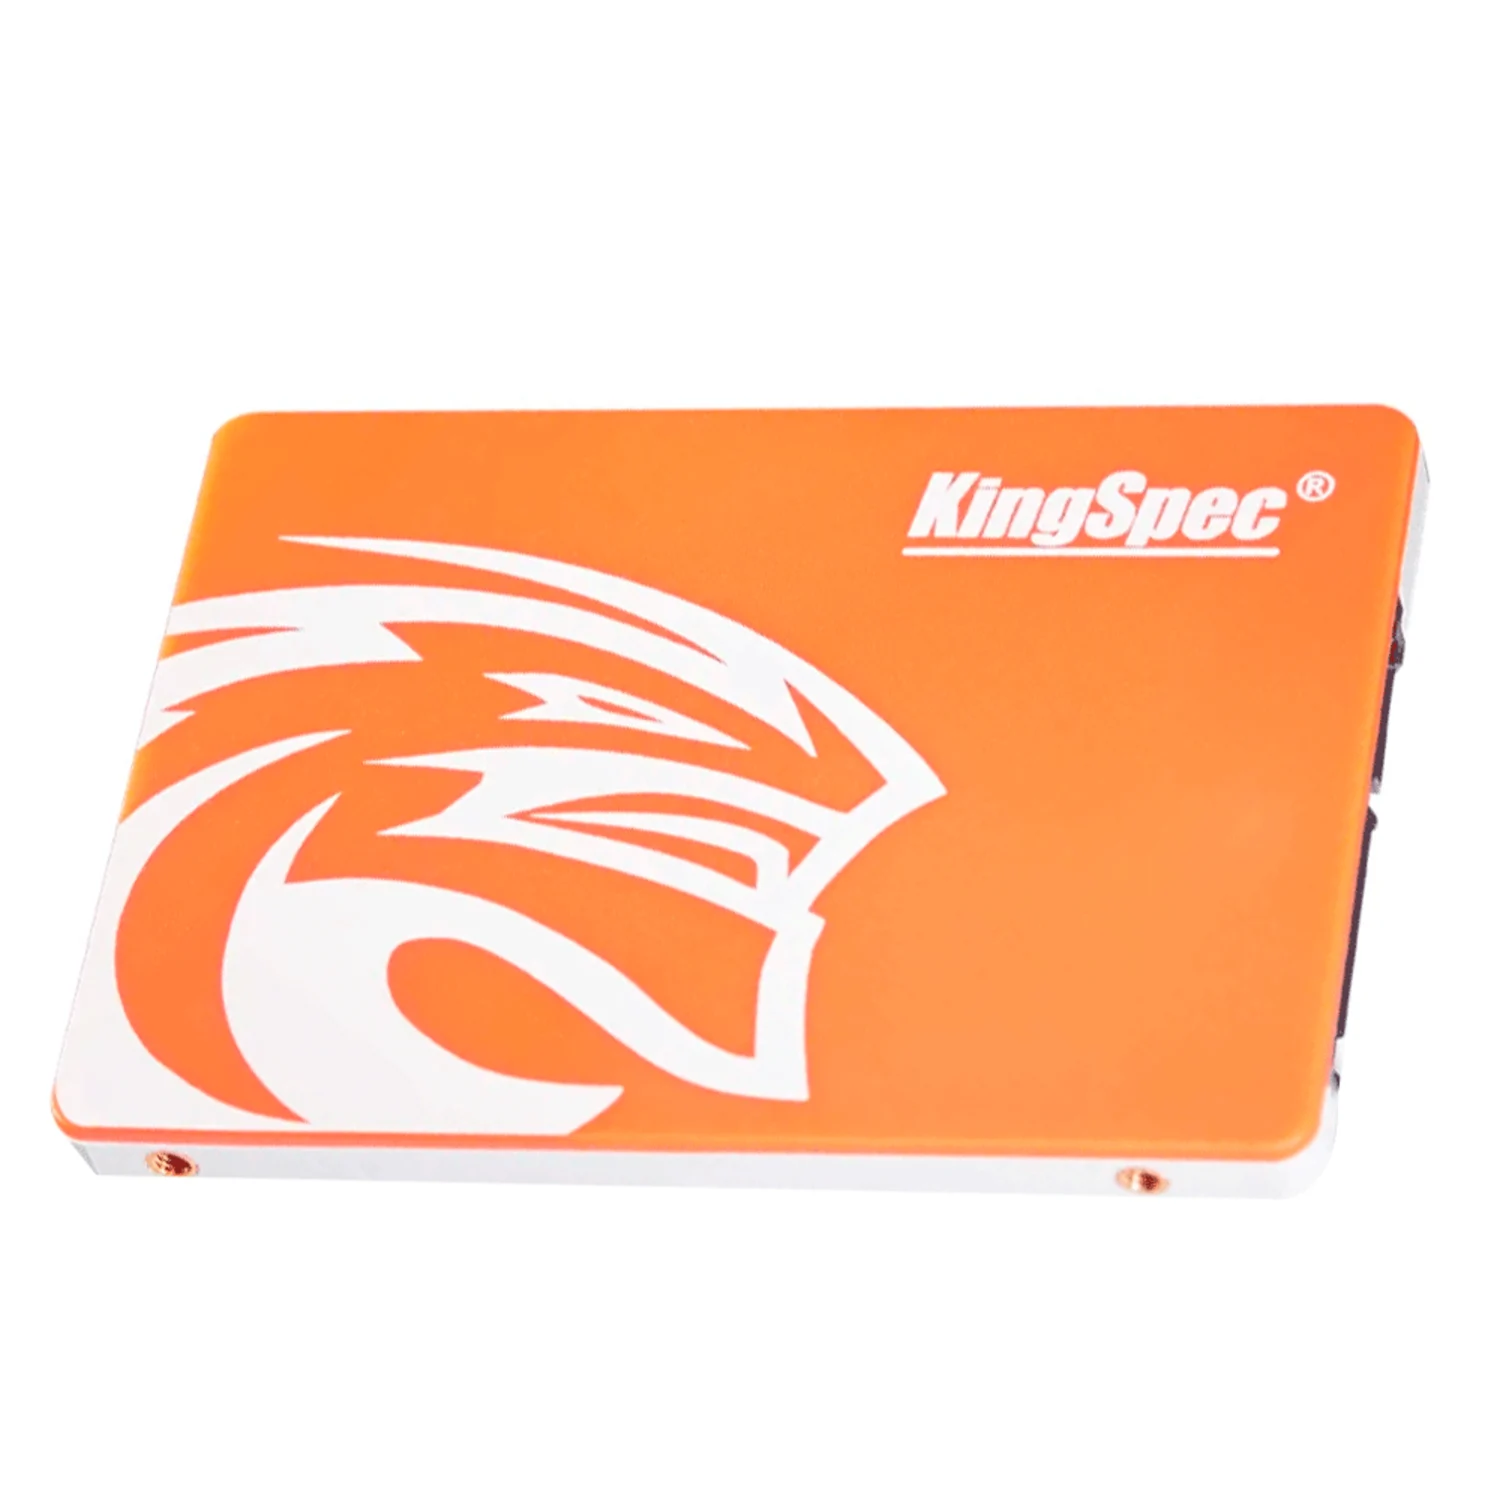 HD SSD Kingspec 240GB / 570MB / SATA III - (P4-240)